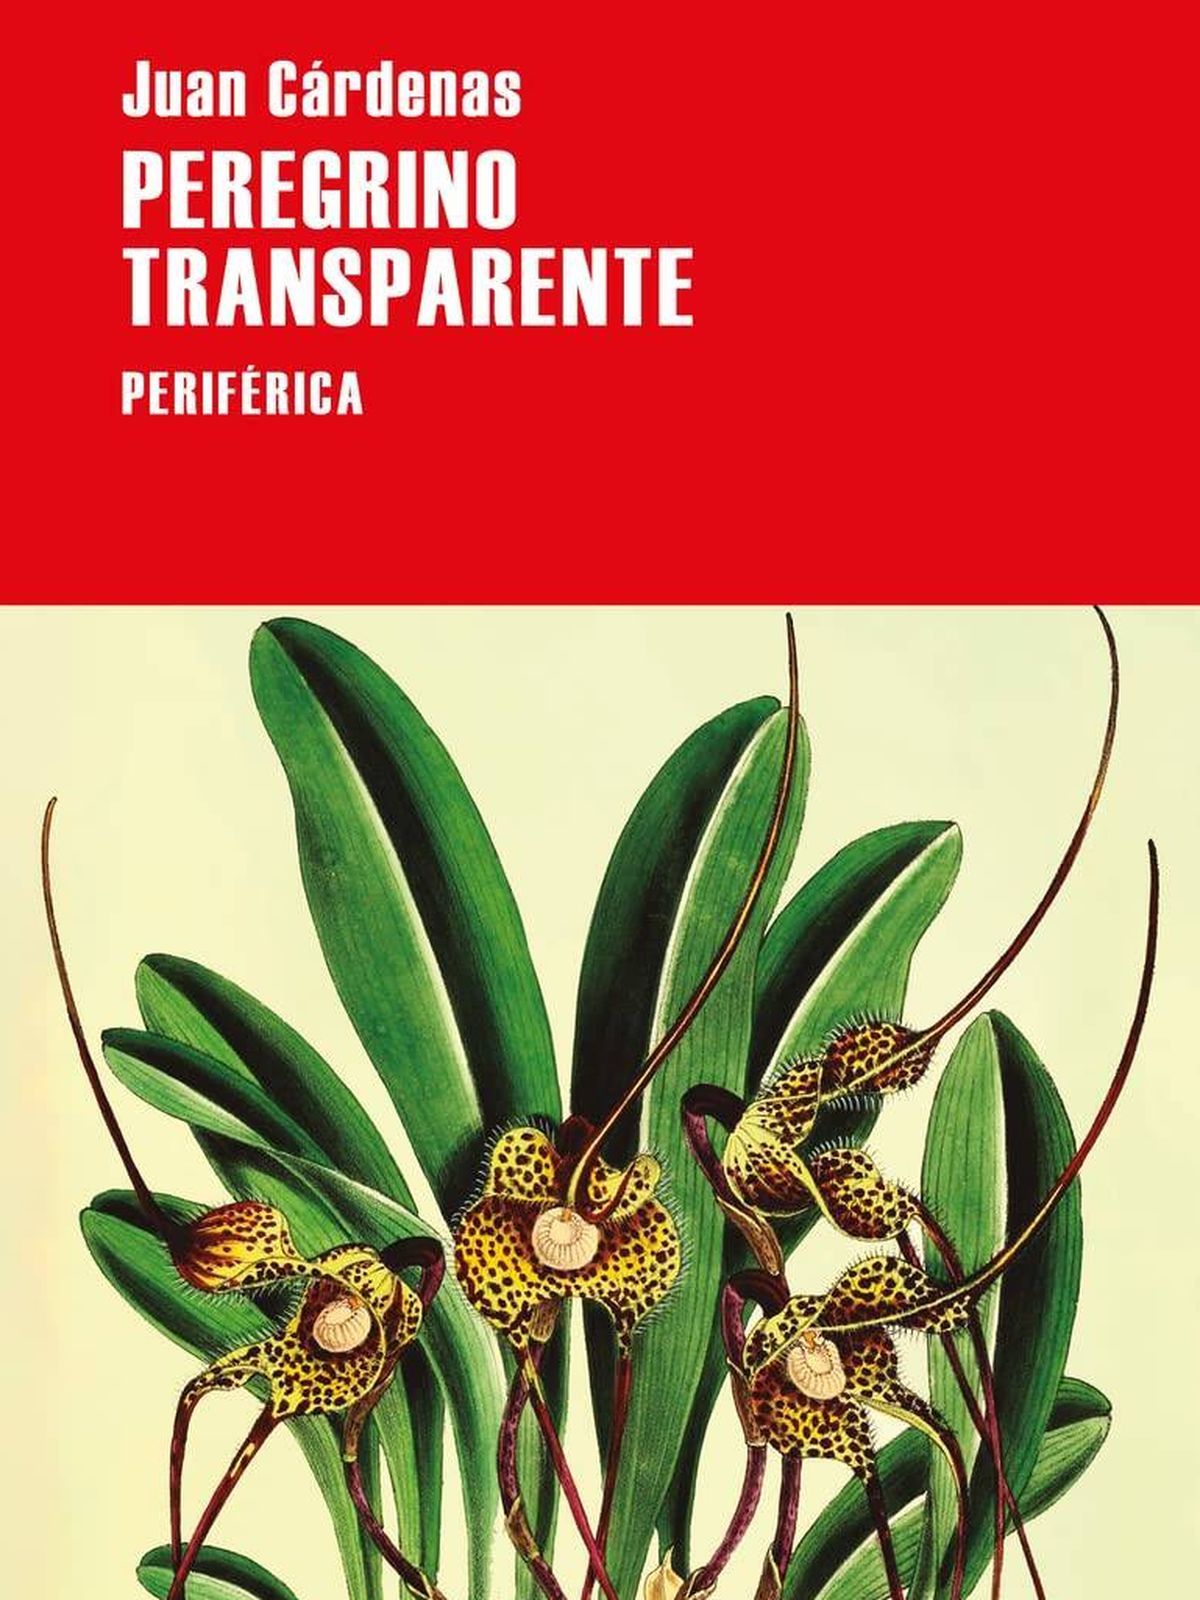 Portada de 'Peregrino transparente', de Juan Cárdenas. 